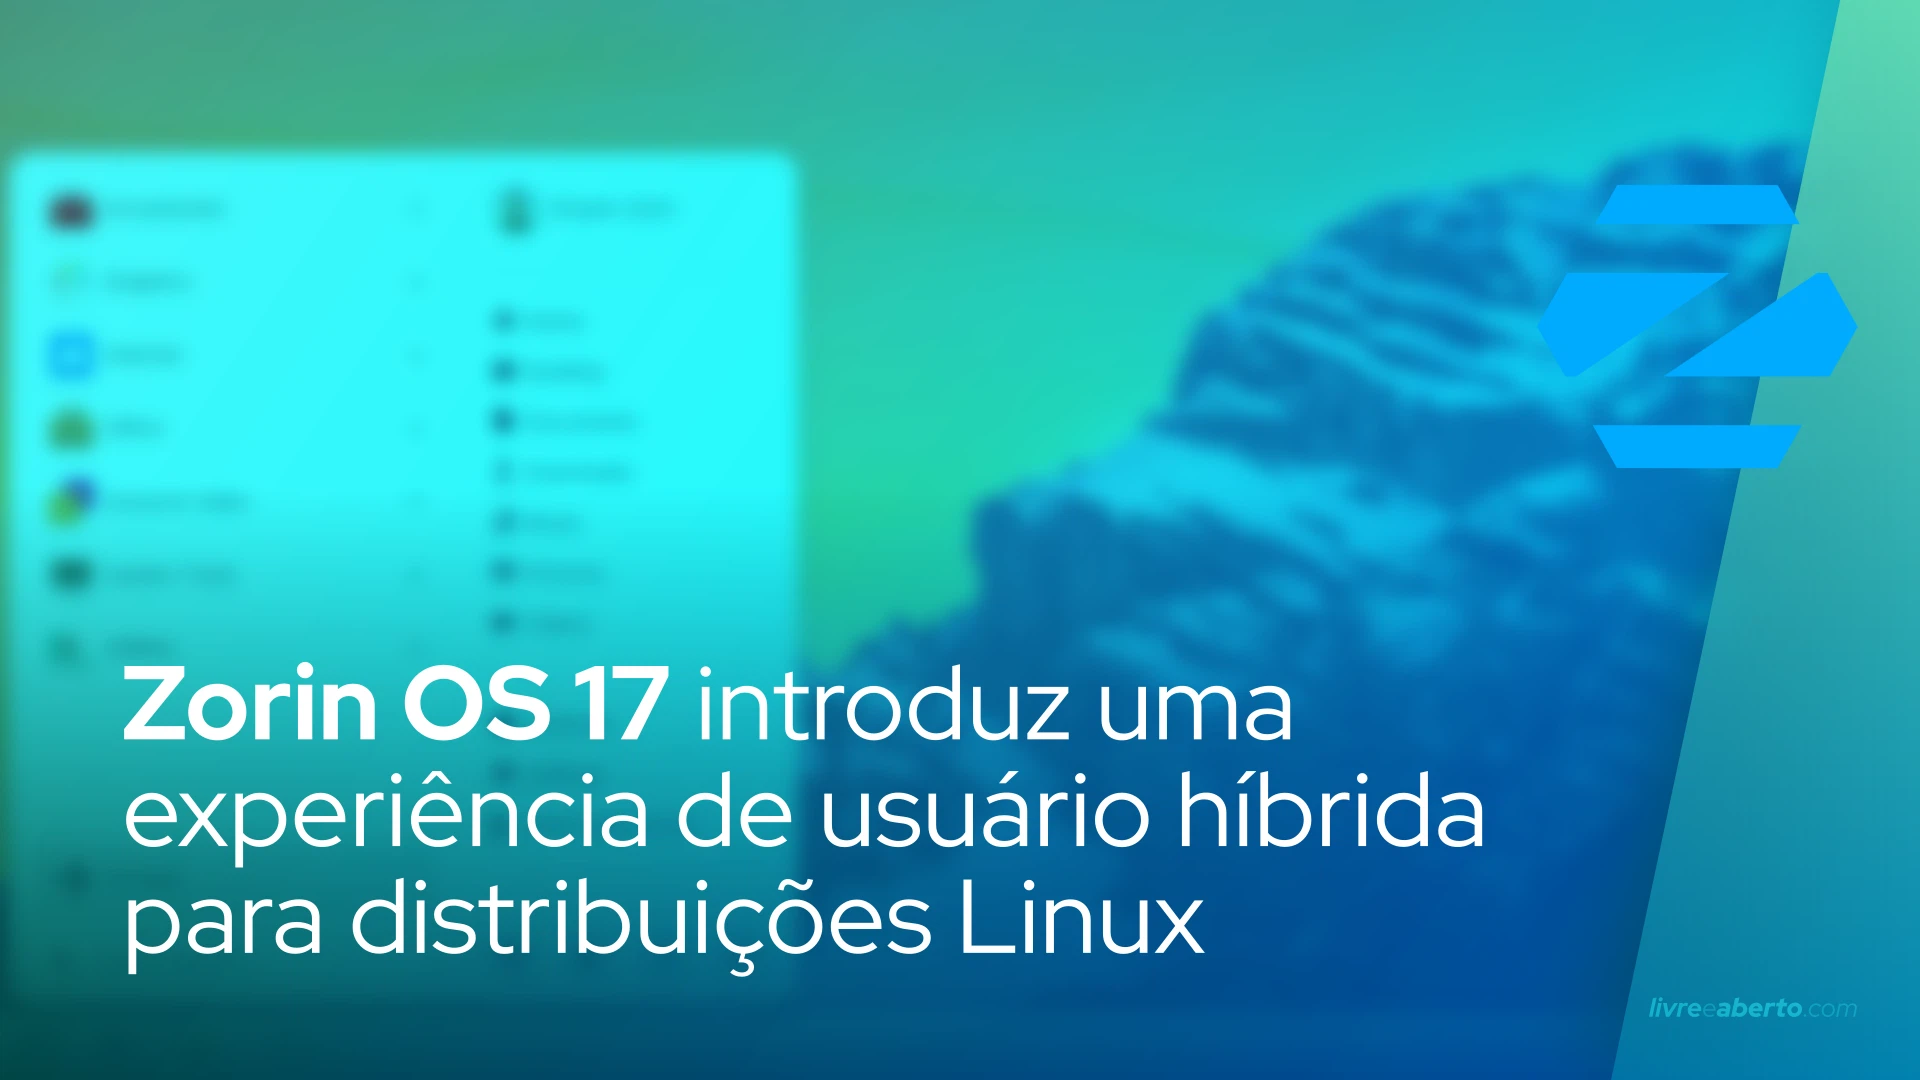 Zorin OS 17 introduz uma experiência de usuário híbrida para distribuições Linux